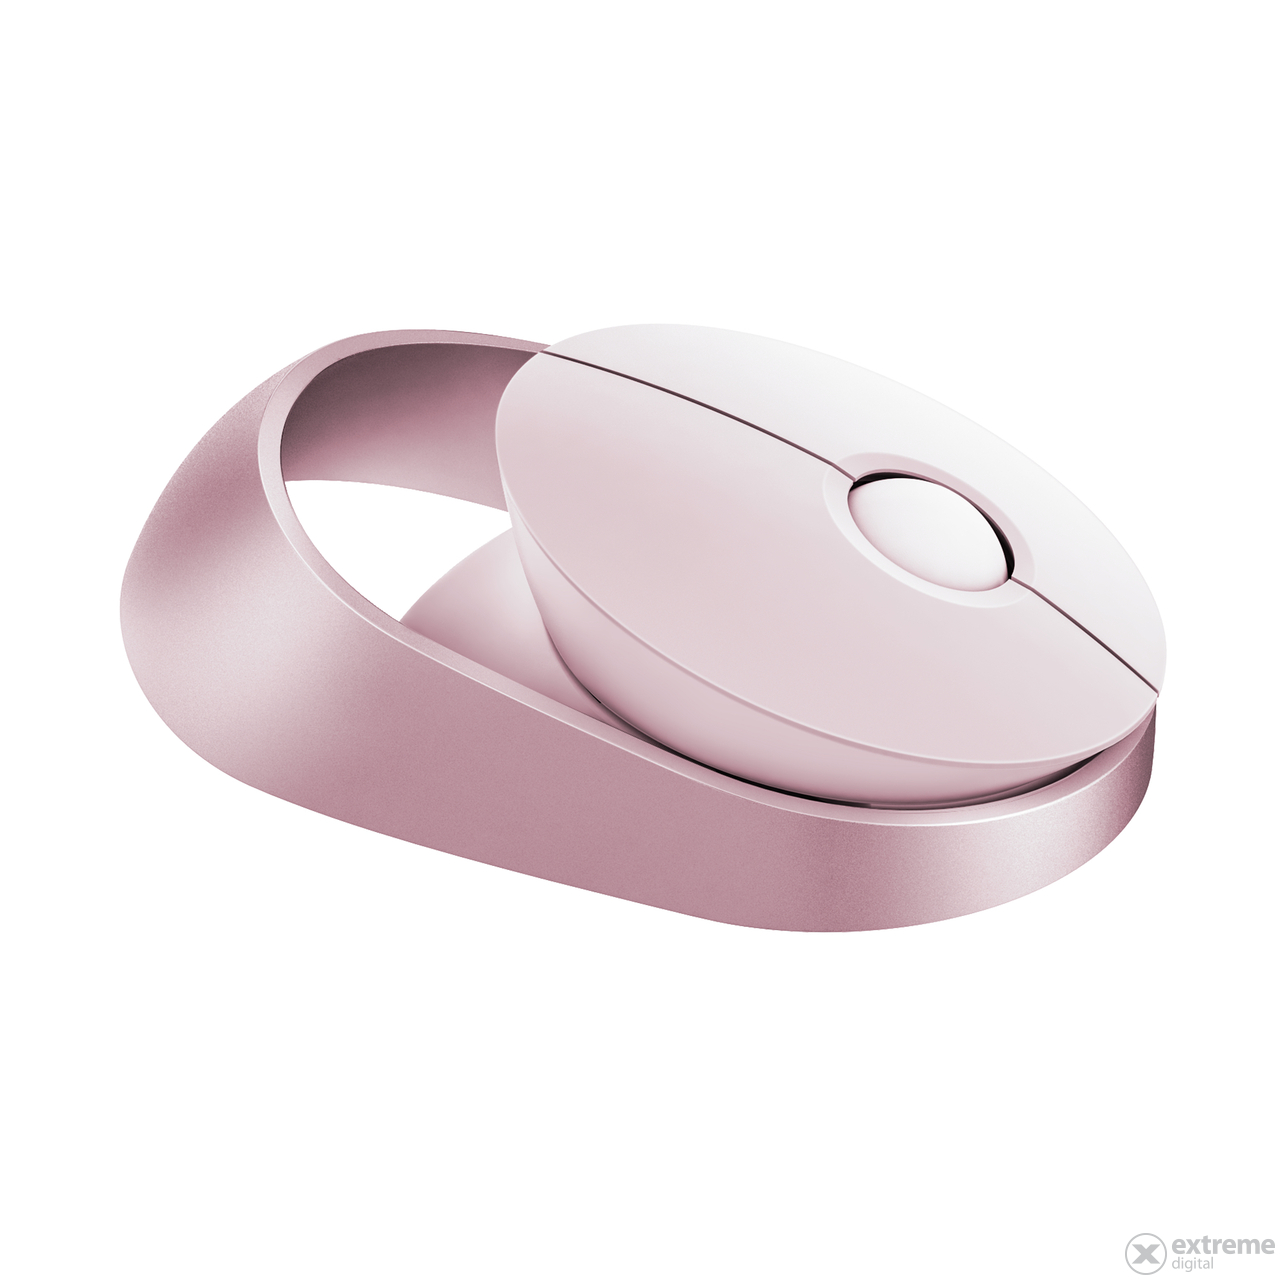 Rapoo Ralemo Air 1 kabellose Multimode-Bluetooth-Maus, pink